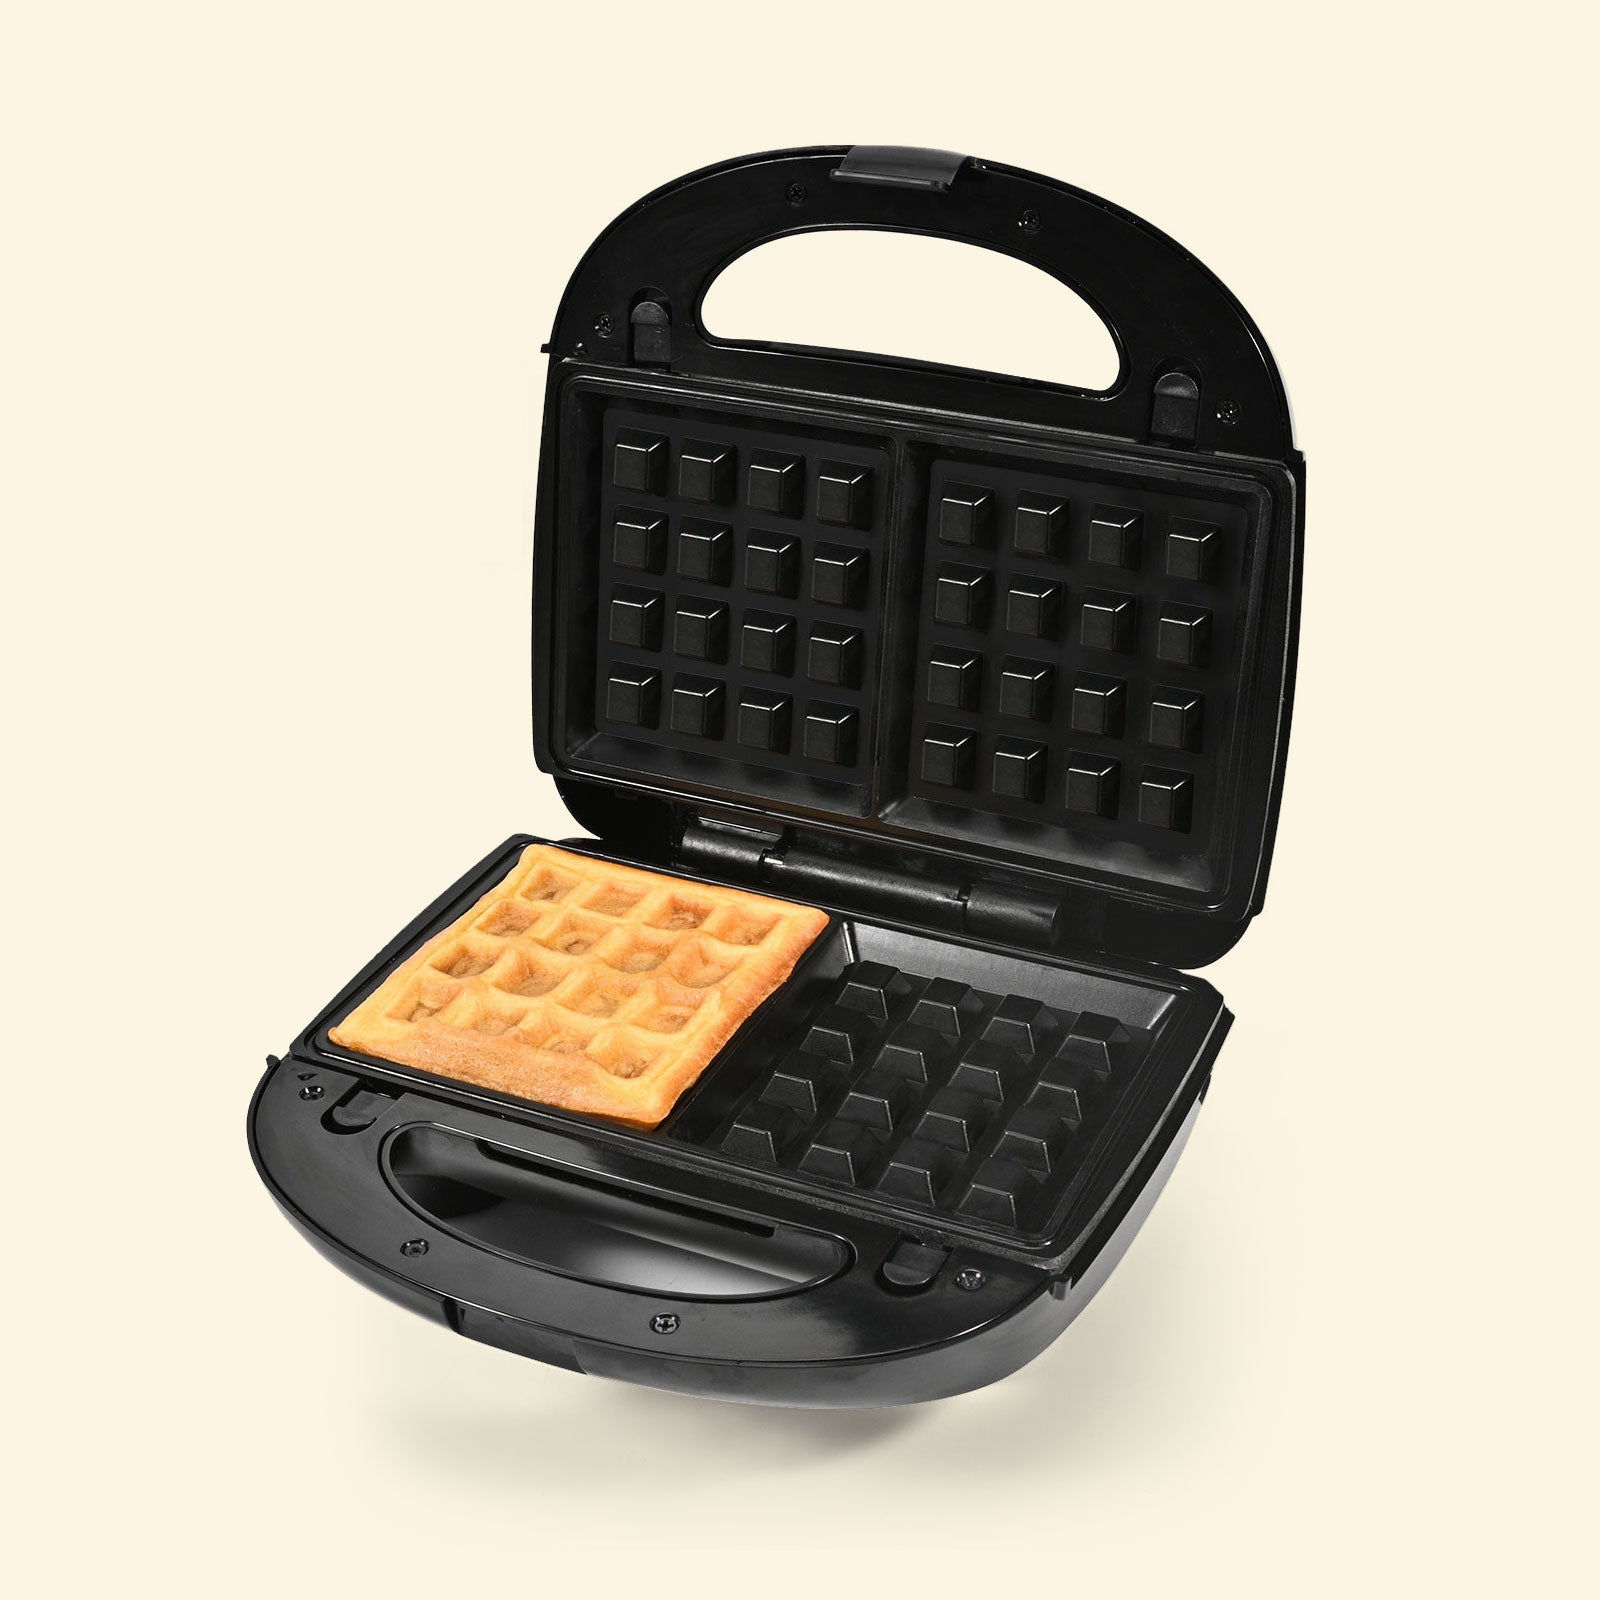 Is Black+Decker 3-in-1 Waffle, Grill & Sandwich Maker Worth it